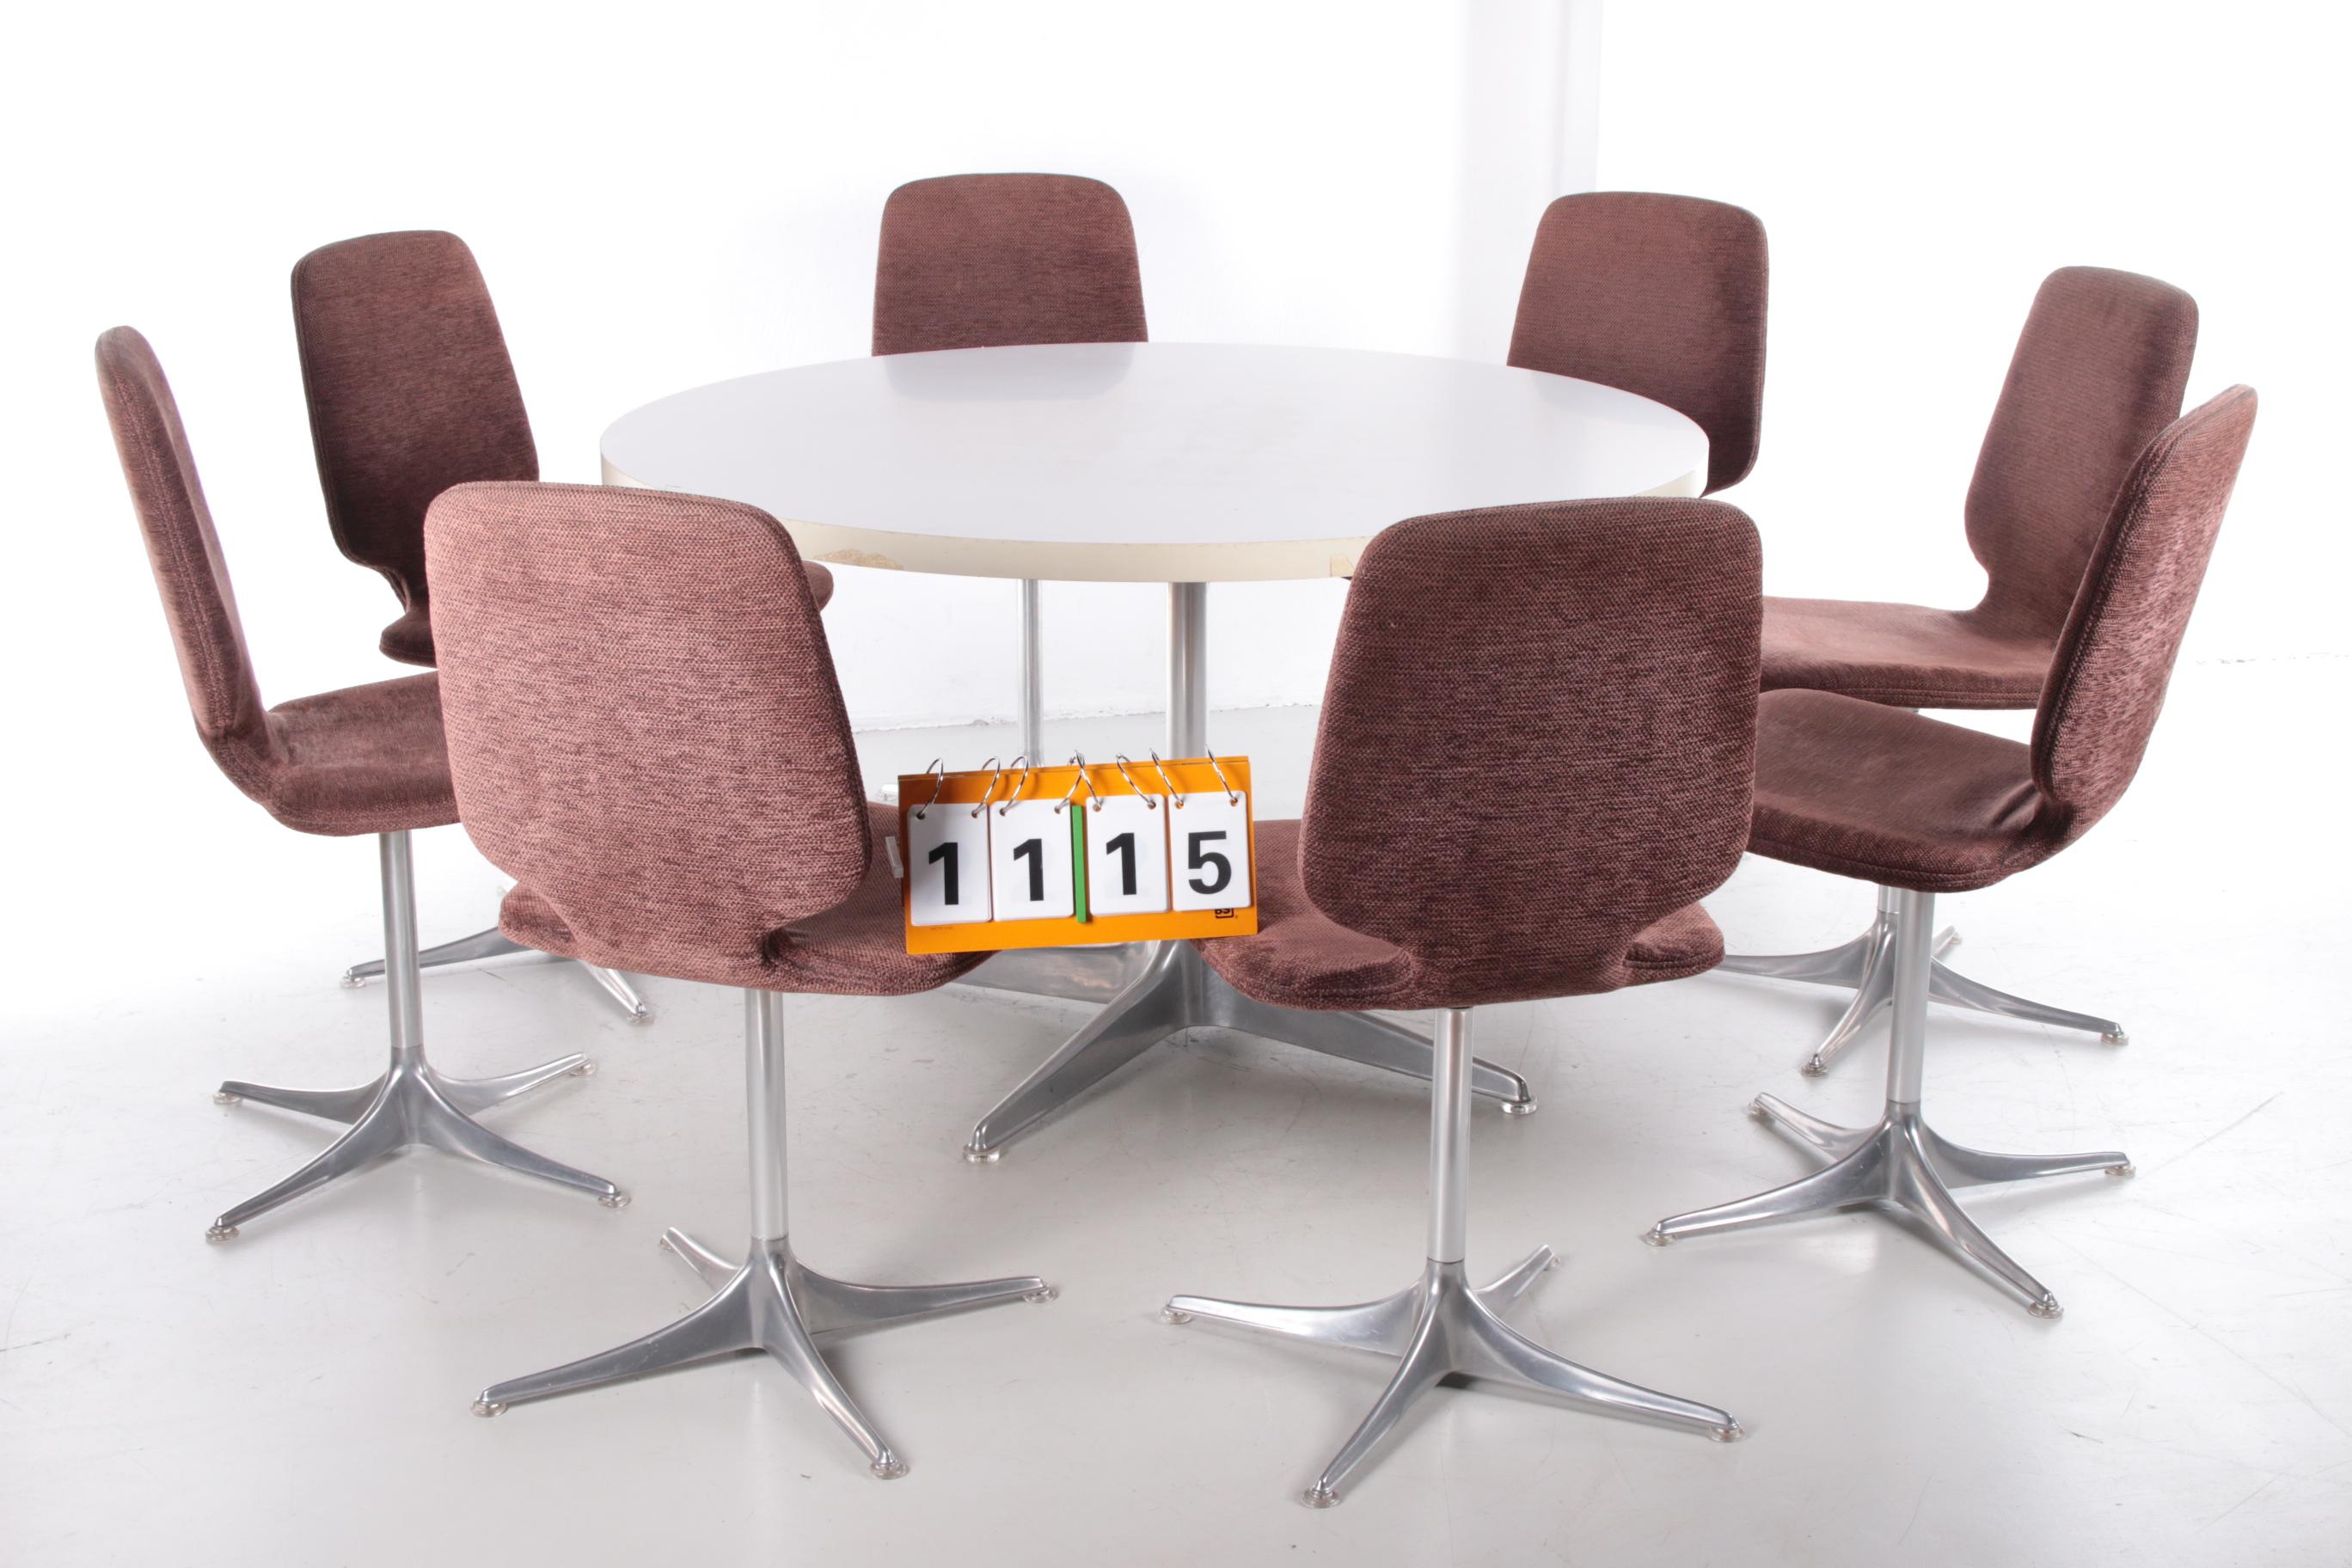 Satz von 8 Stühlen mit Tisch von Horst Bruning Stuhl Modell Sedia für COR.


Esstischgruppe Modell Sedia,

Deutsches Design von Horst Brüning für COR.

Entworfen im Jahr 1966.

Sitze mit braunem Samt gepolstert.

Sockel aus poliertem Aluminium.